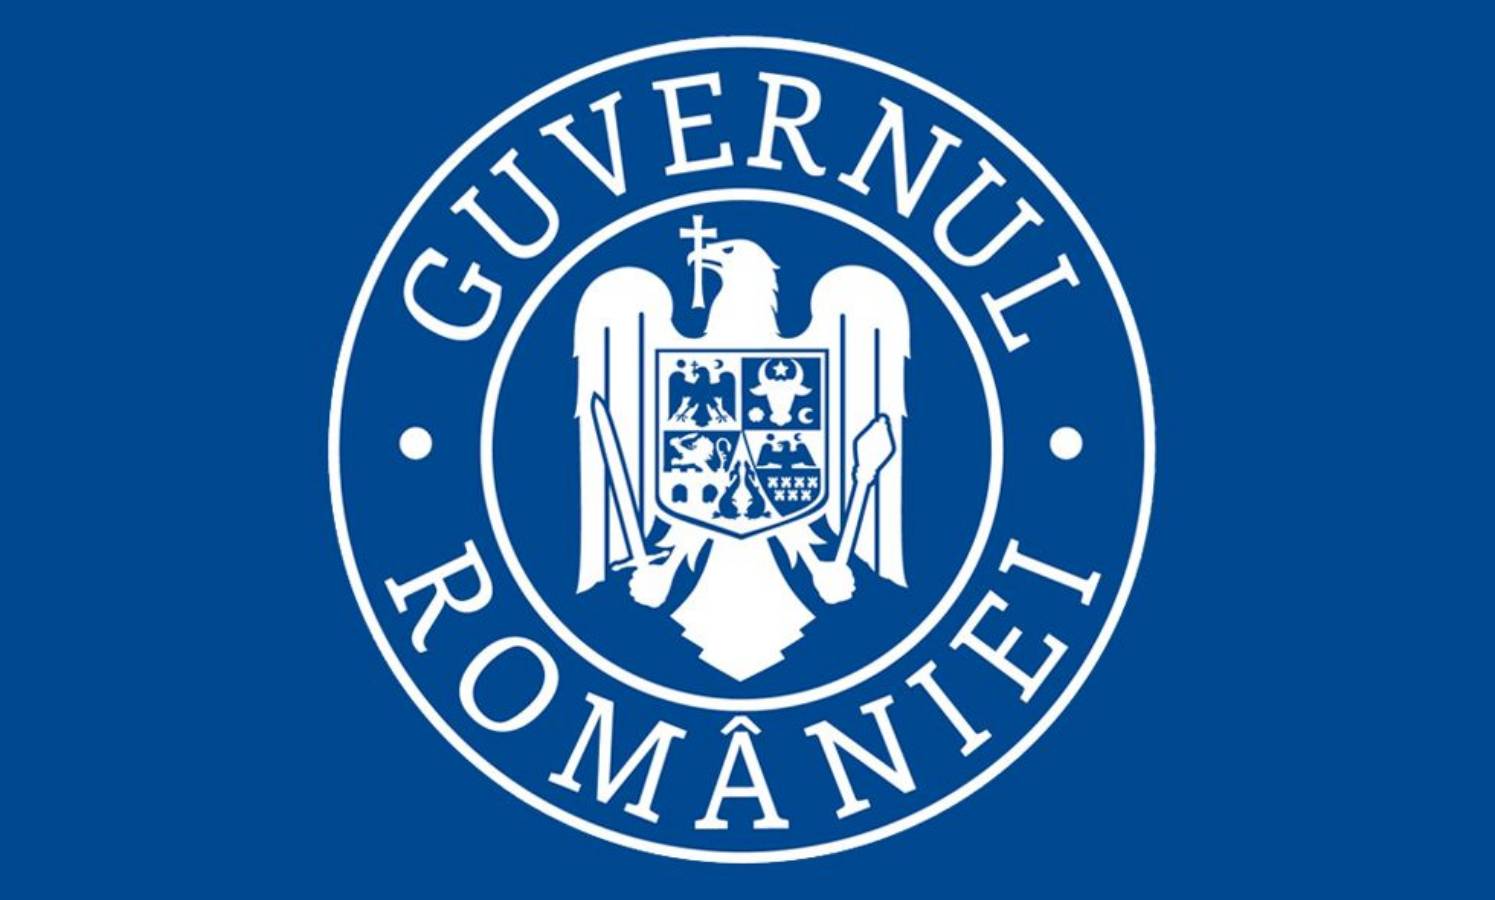 La décision du gouvernement de Roumanie mesure l'état d'alerte